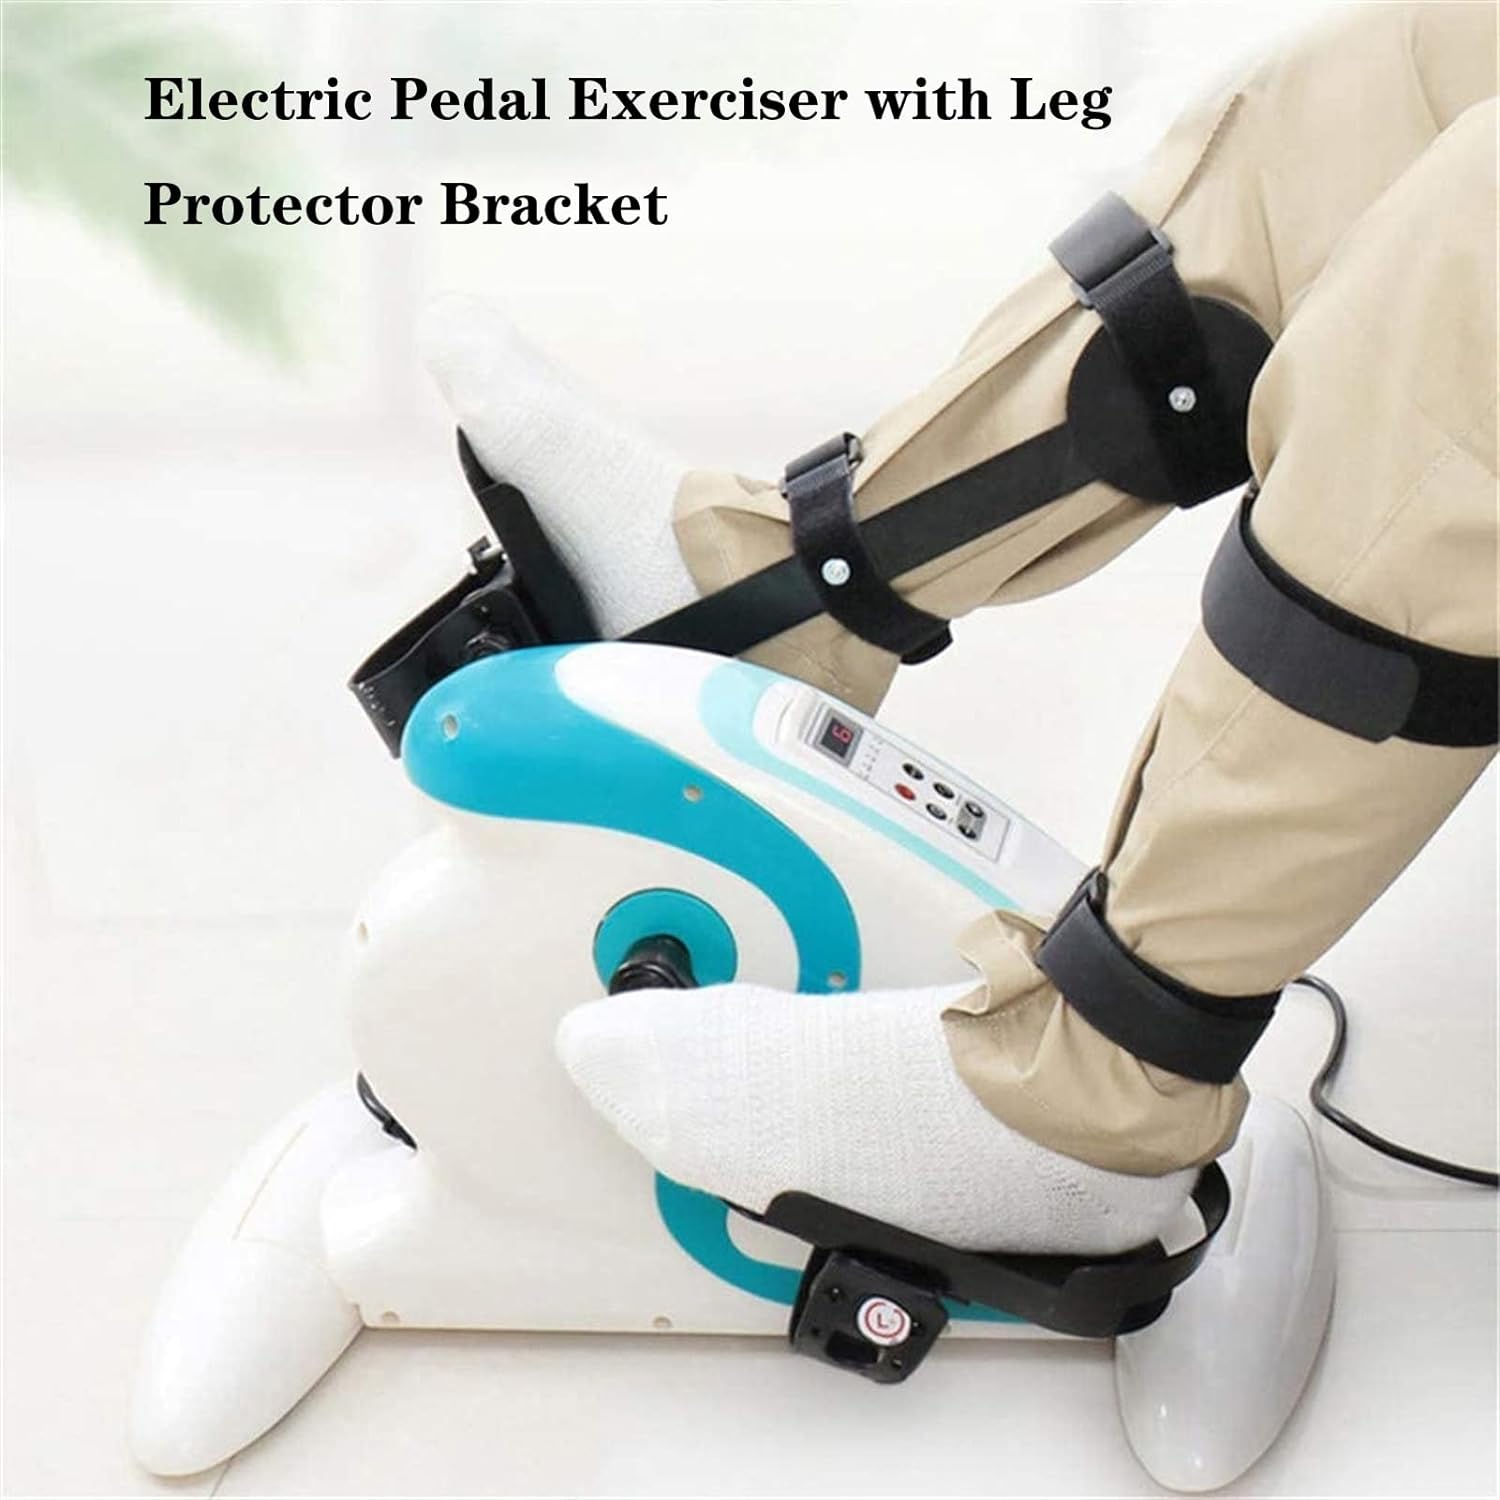 دوچرخه ورزشی با پدال برقی مدل Electric Pedal Exerciser Motorized - ارسال 50 الی 55 روز کاری